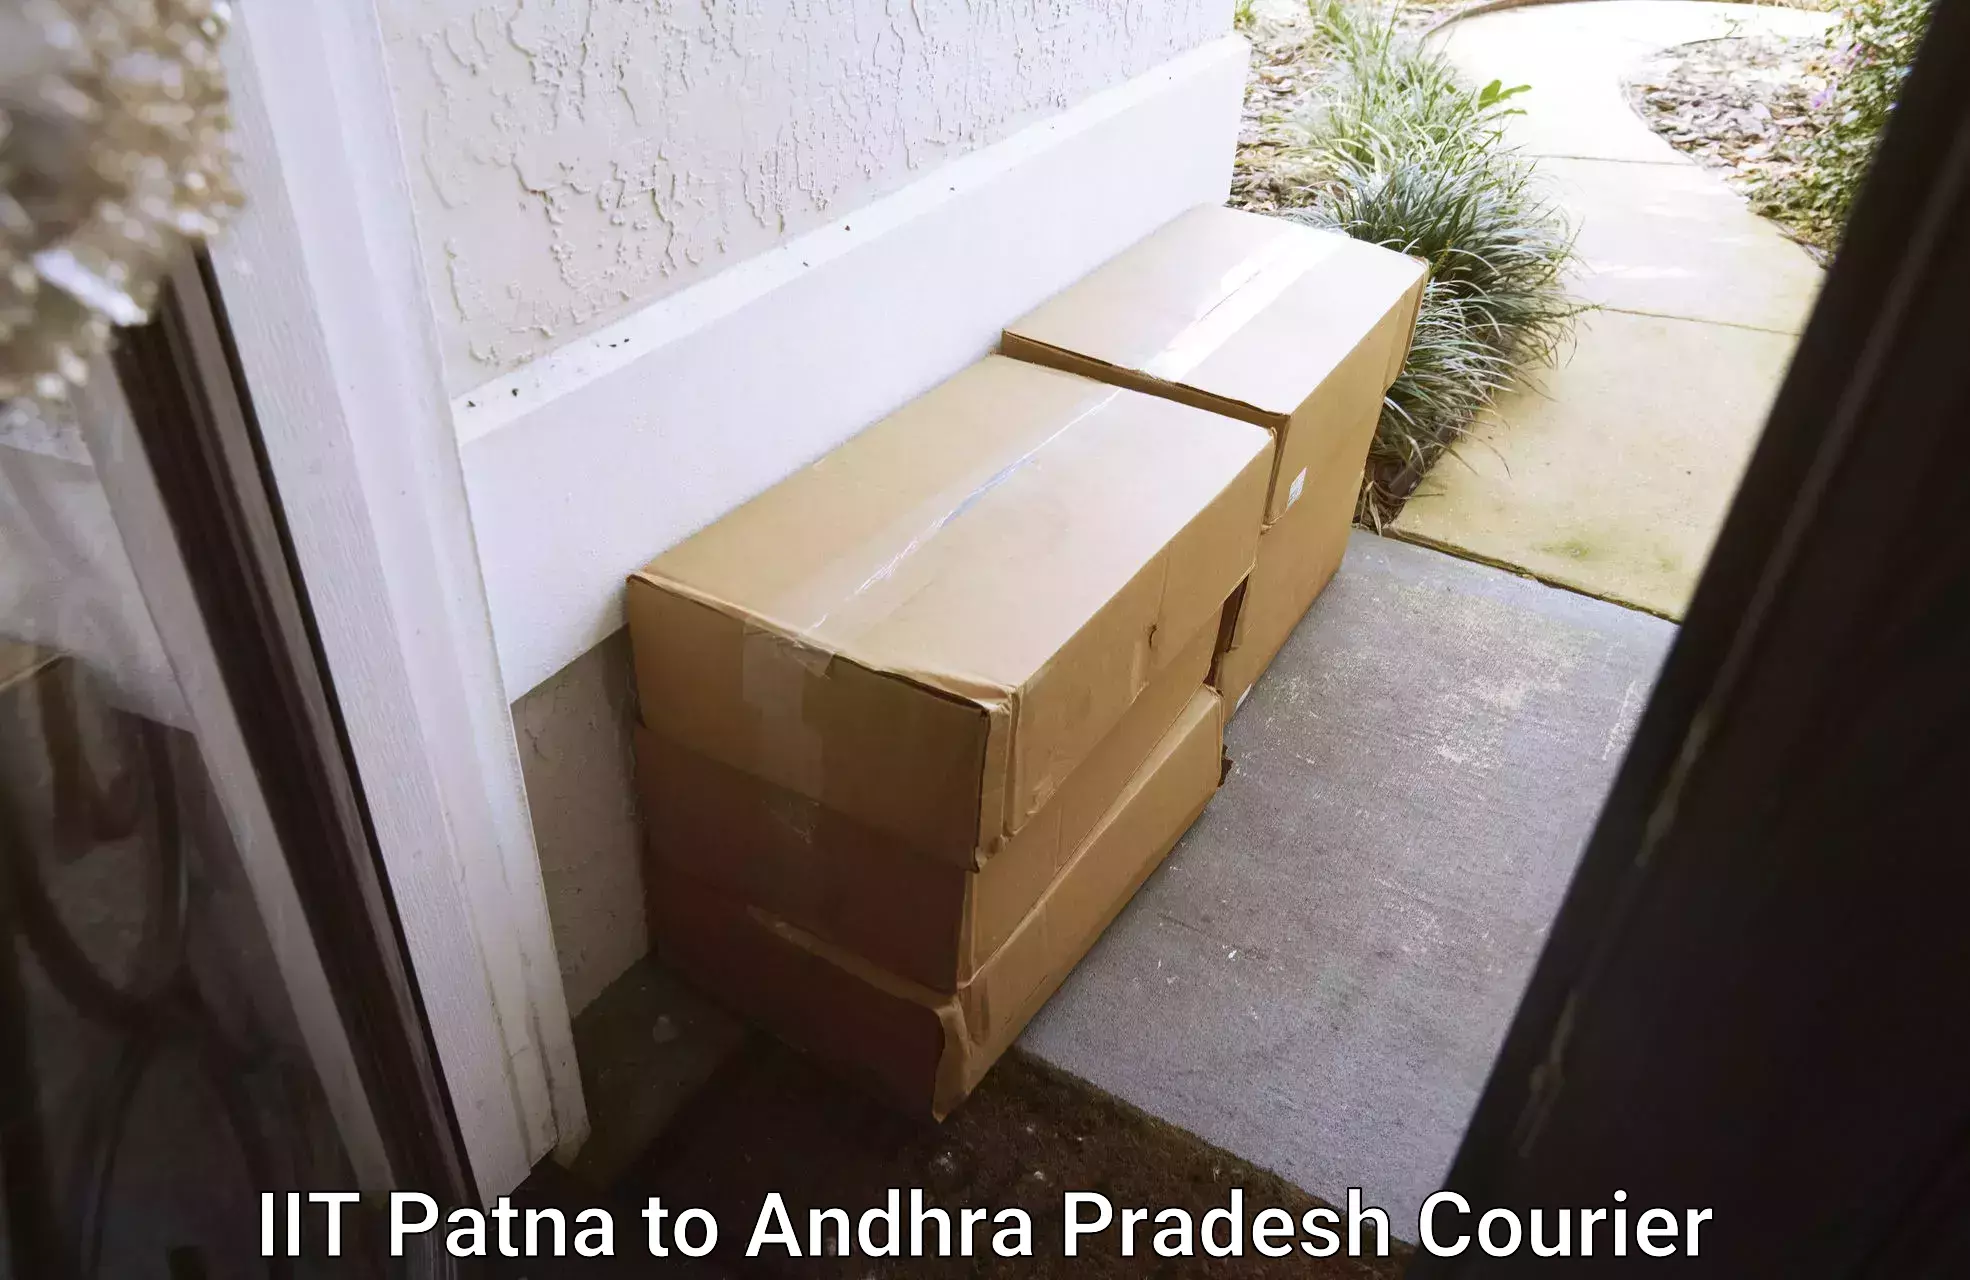 Expert goods movers IIT Patna to Andhra Pradesh